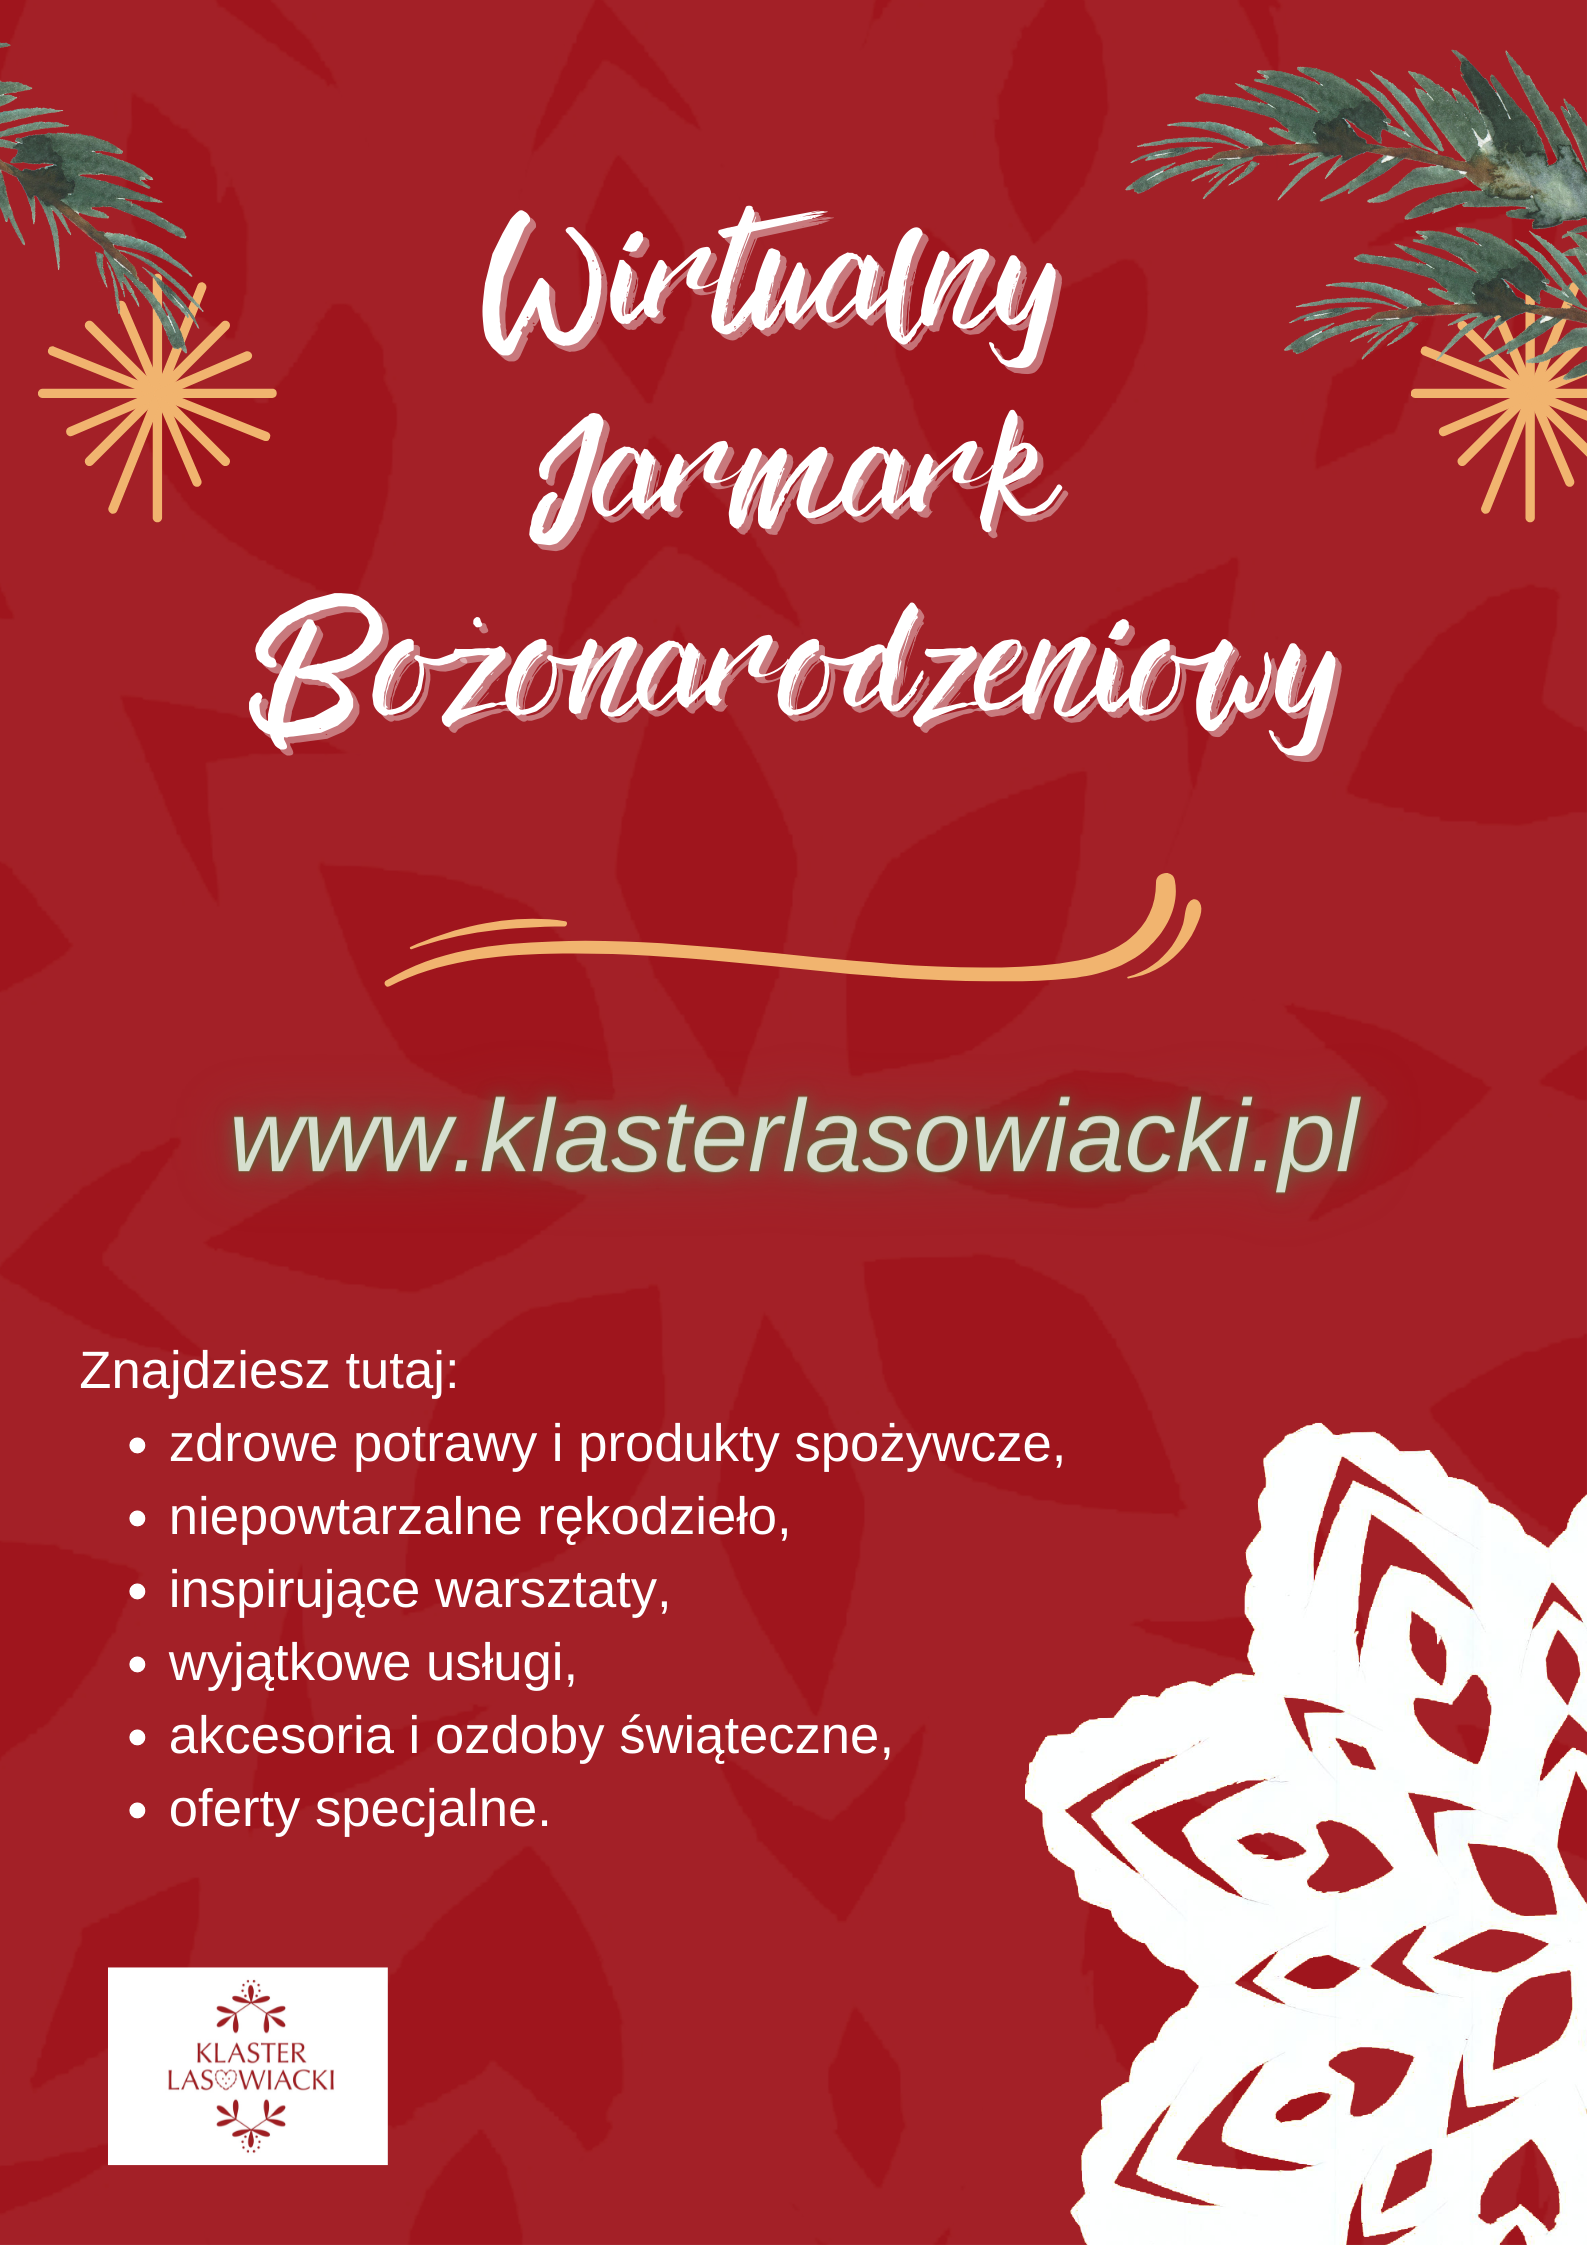 Klaster Lasowiacki zaprasza na Wirtualny Jarmark Bożonarodzeniowy!